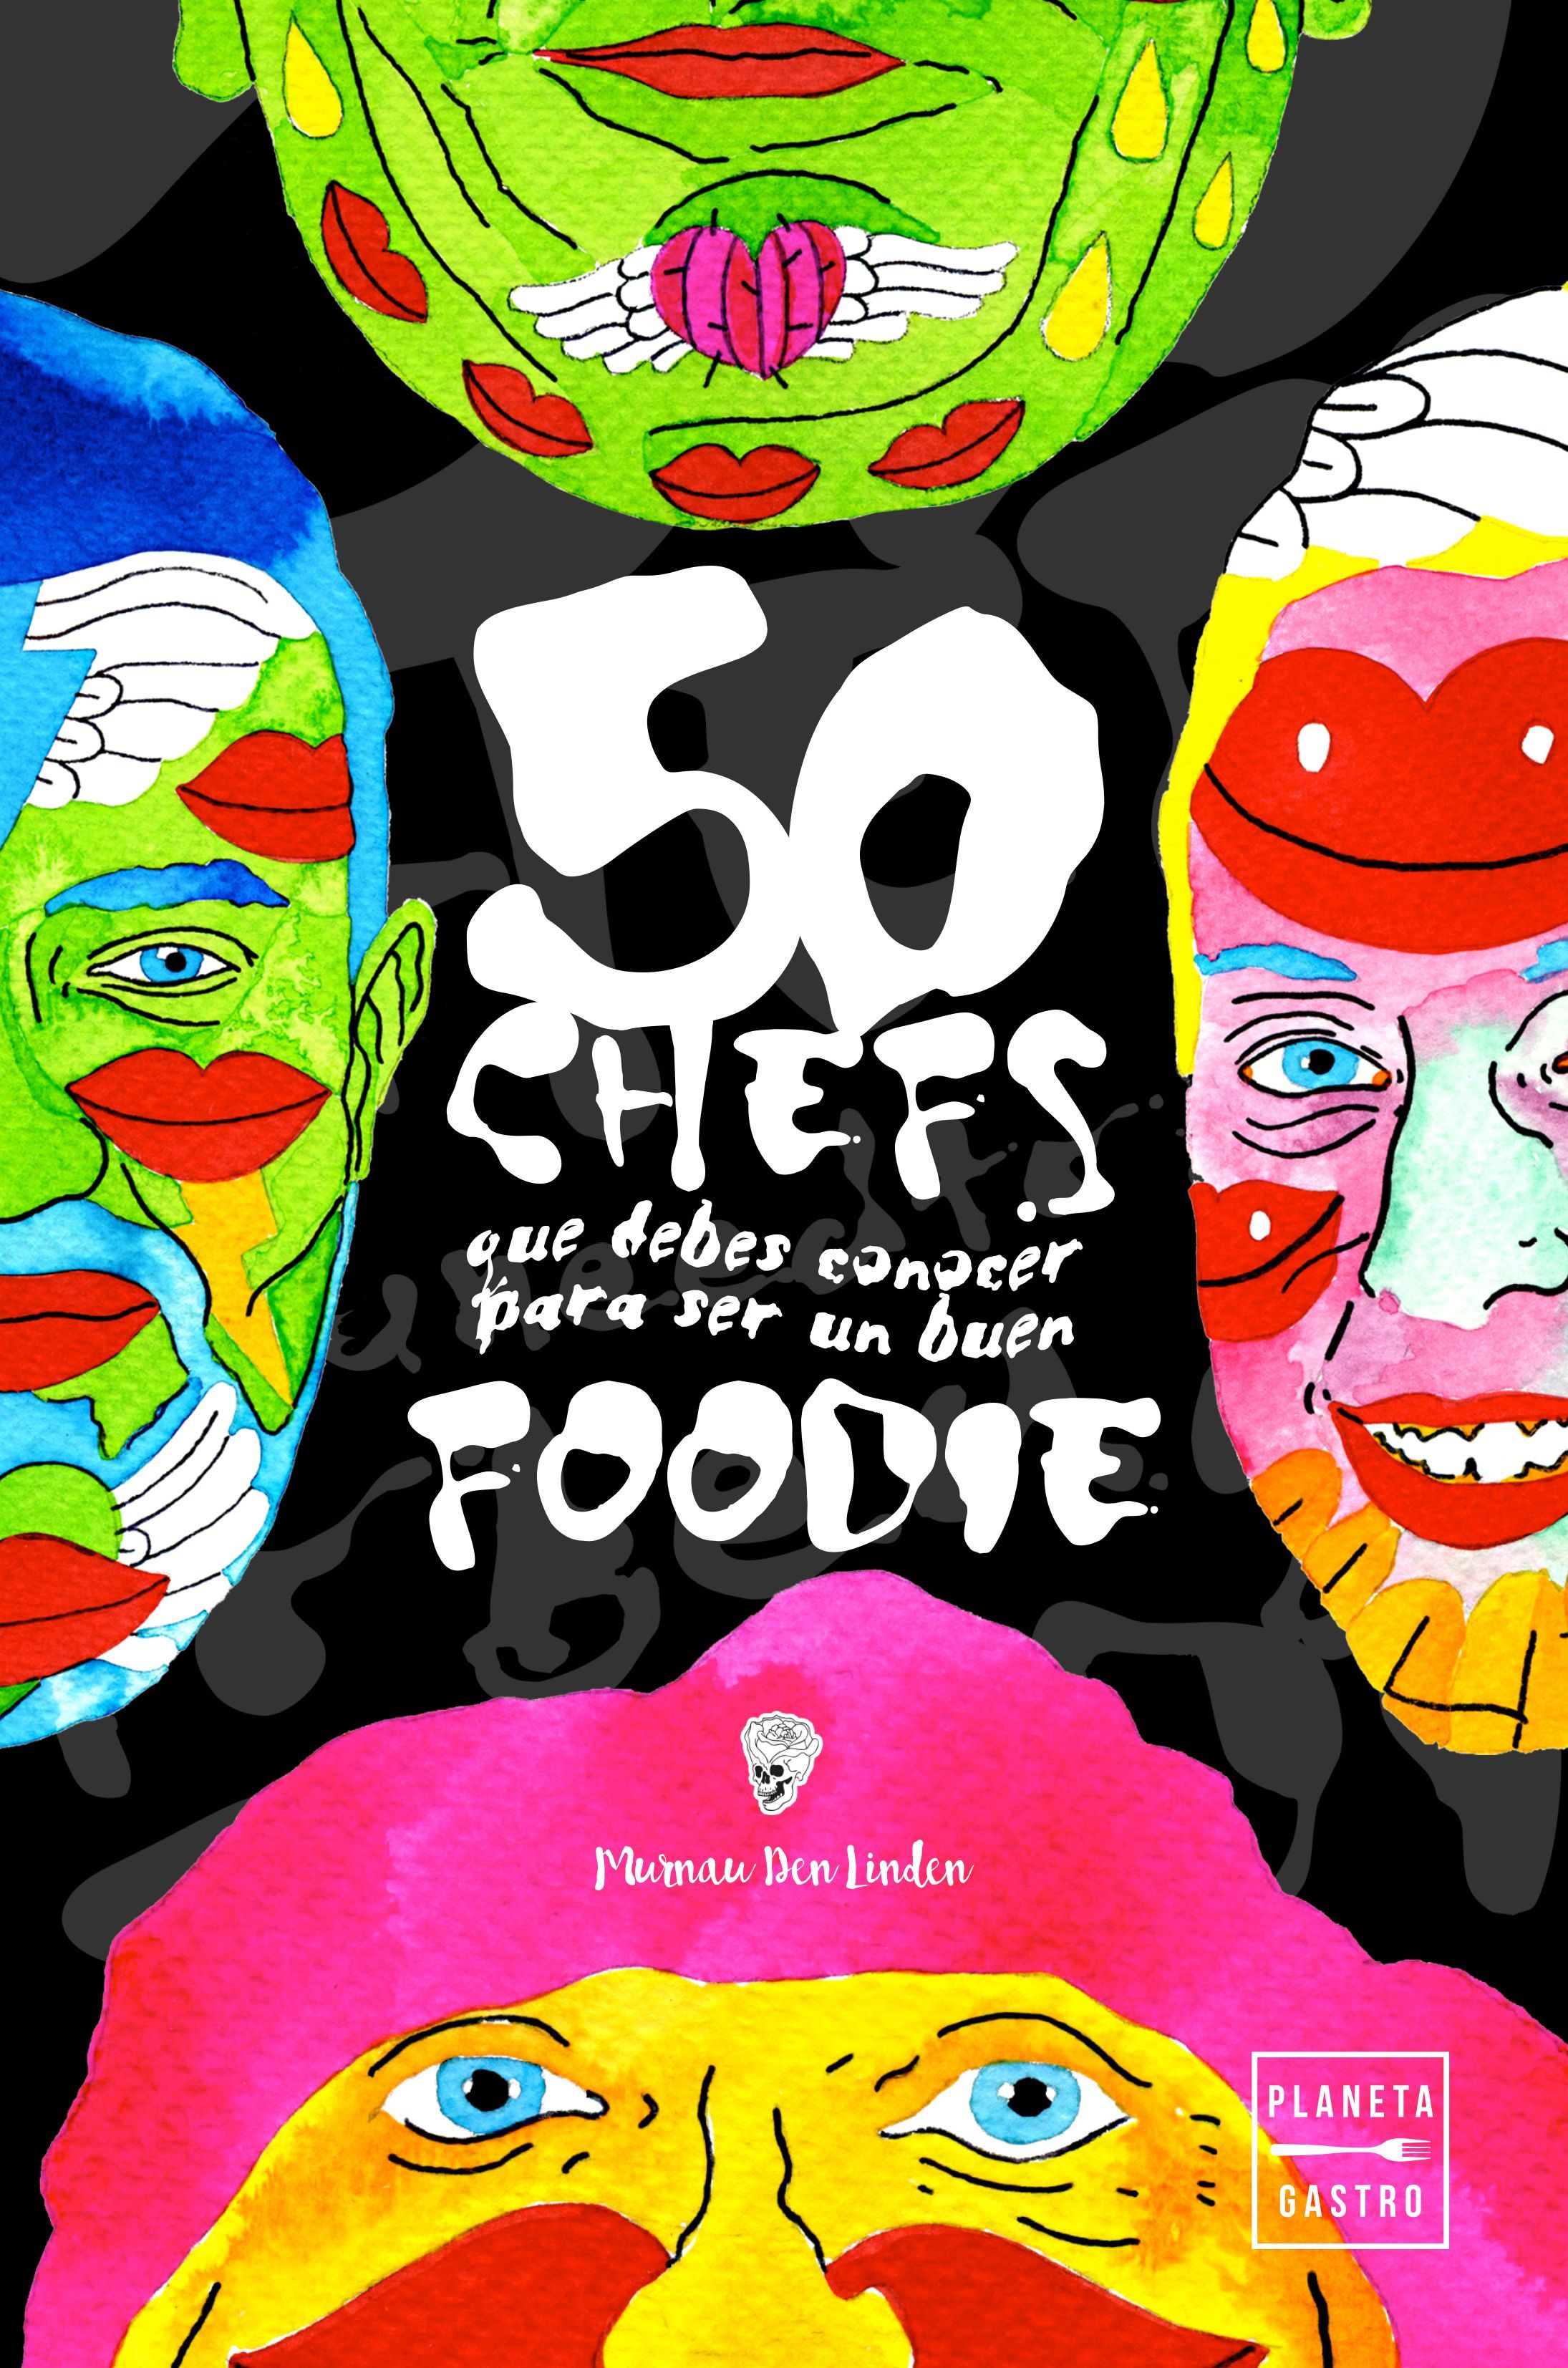 El artista Murnau Den Linden propone 50 chefs para ser un experto en gastronomía